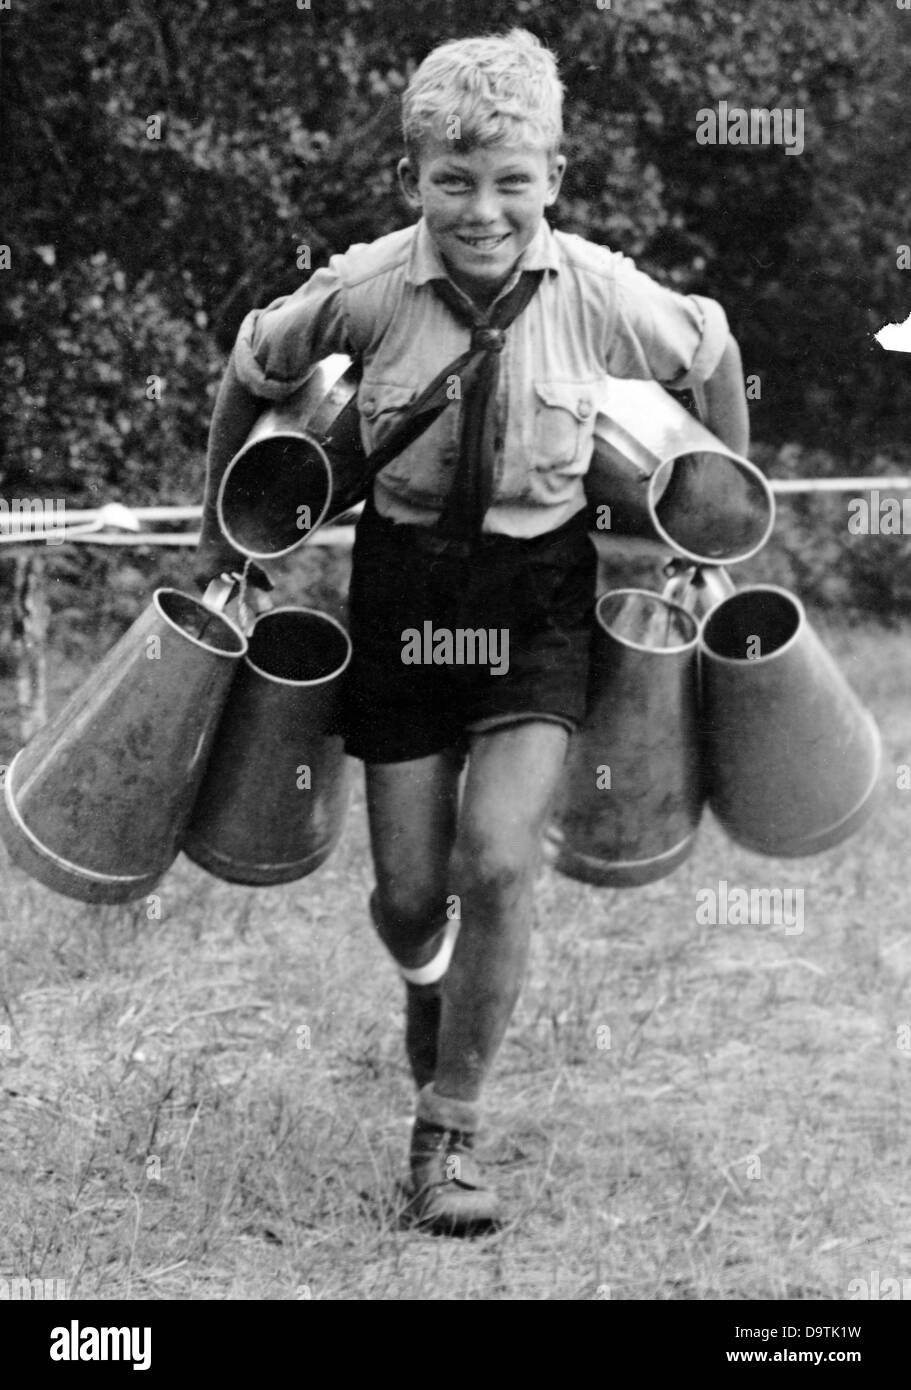 La vie quotidienne dans un camp de vacances. Un garçon de la Jeunesse allemande transporte des canettes de la cuisine de campagne, en juin 1939. Fotoarchiv für Zeitgeschichte Banque D'Images